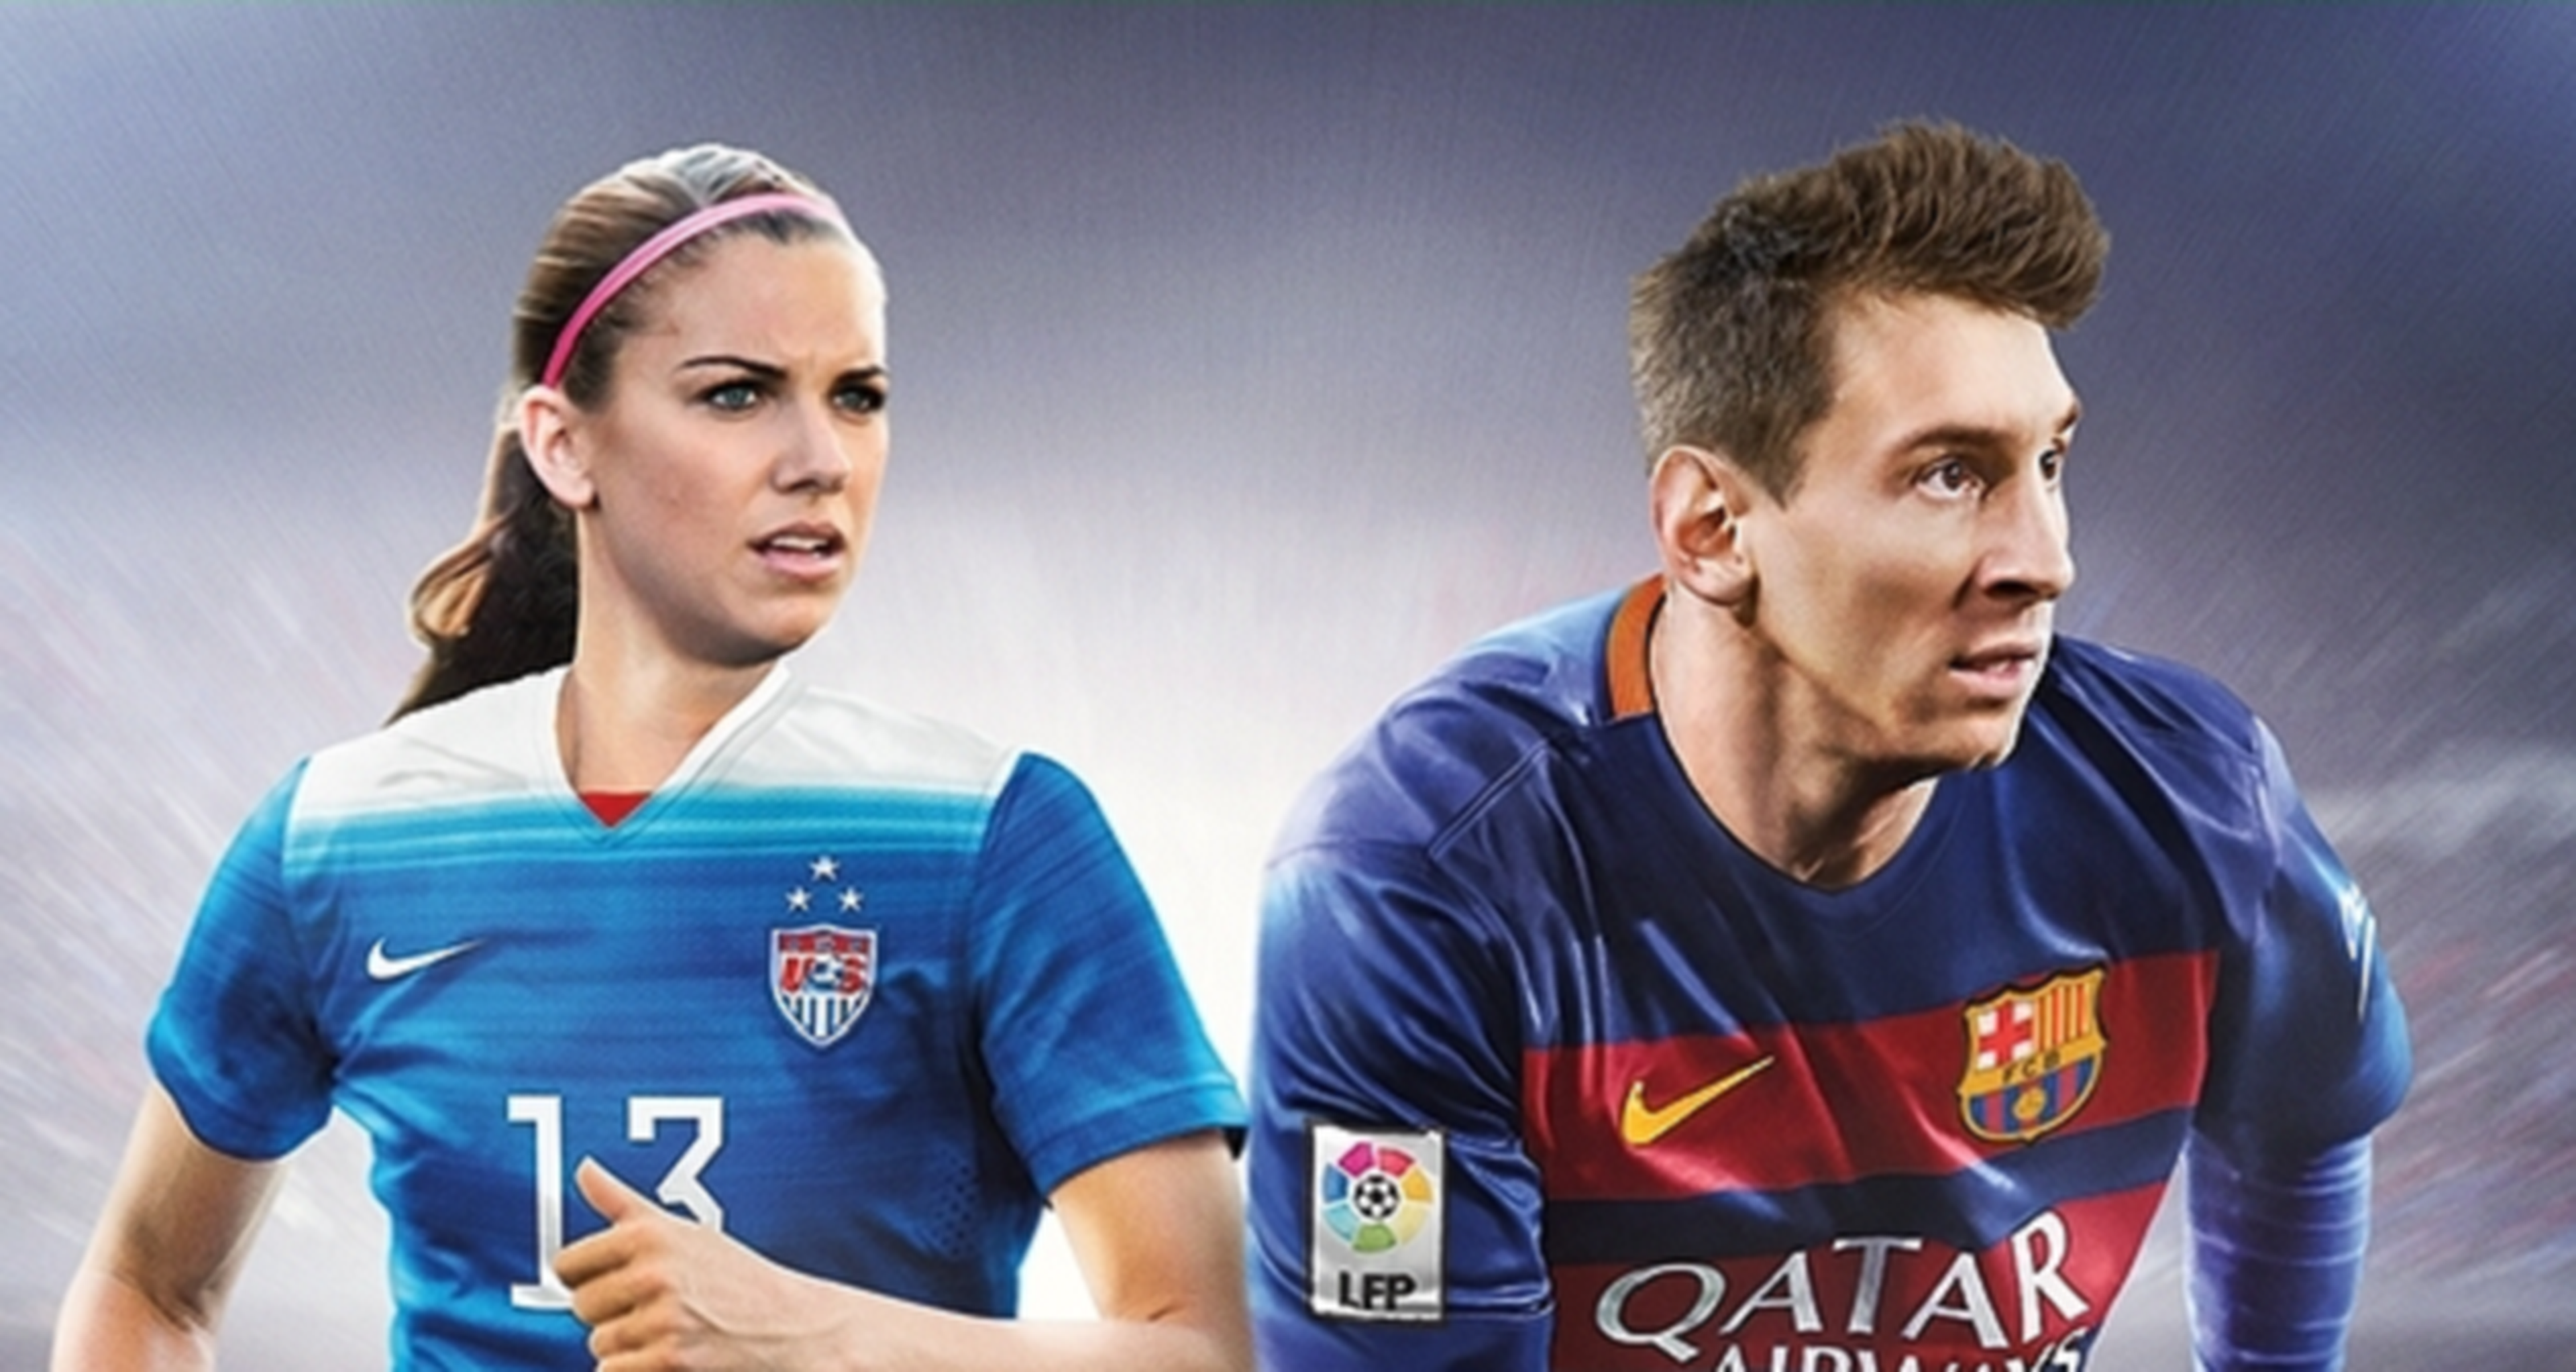 FIFA 16, jugadoras femeninas junto a Messi en la portada